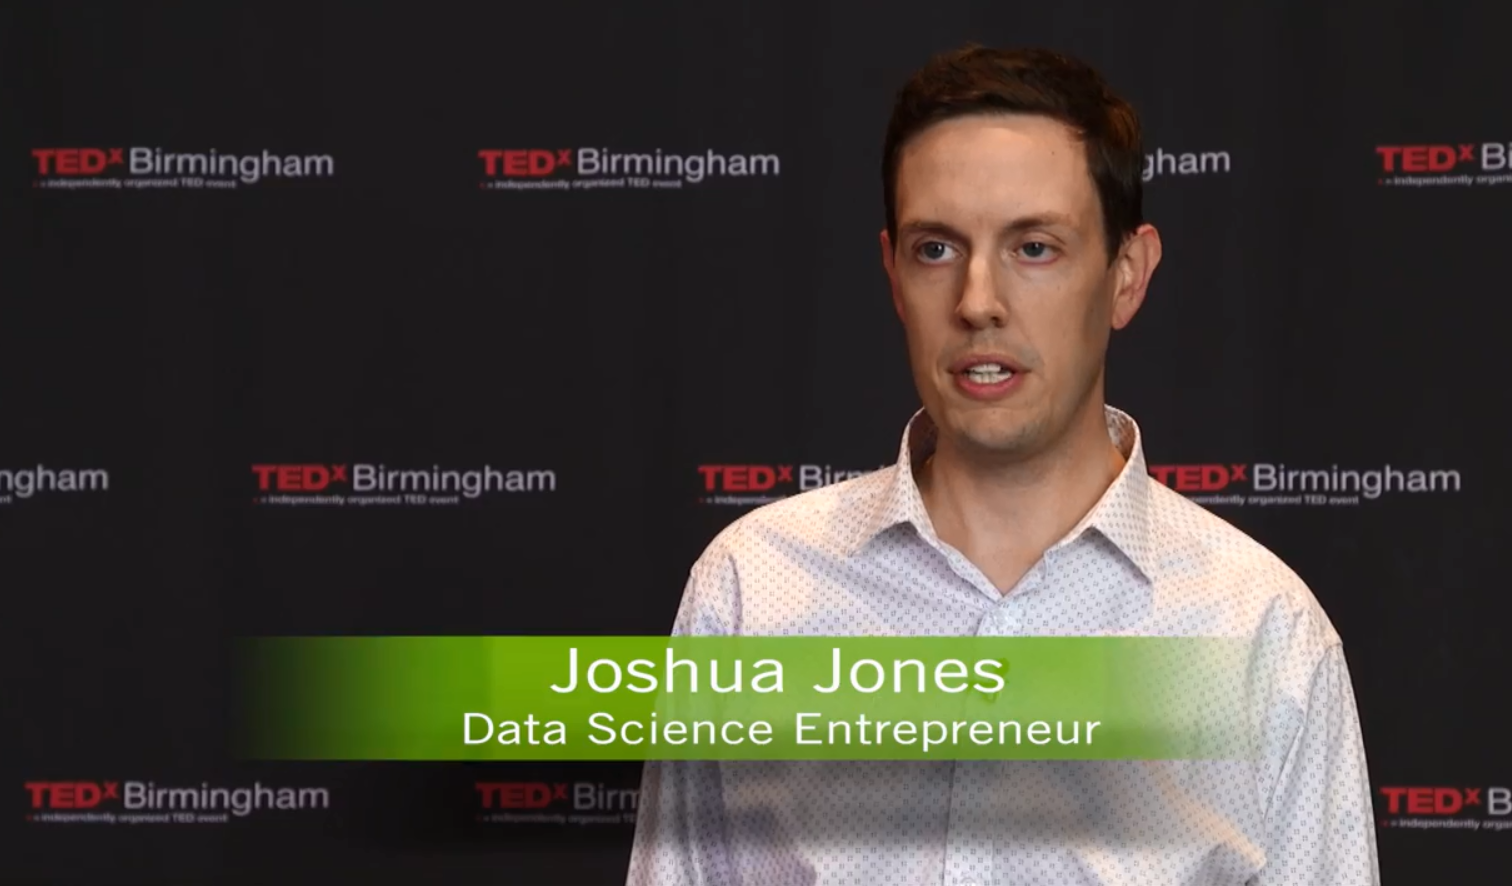 Joshua Jones at TEDx